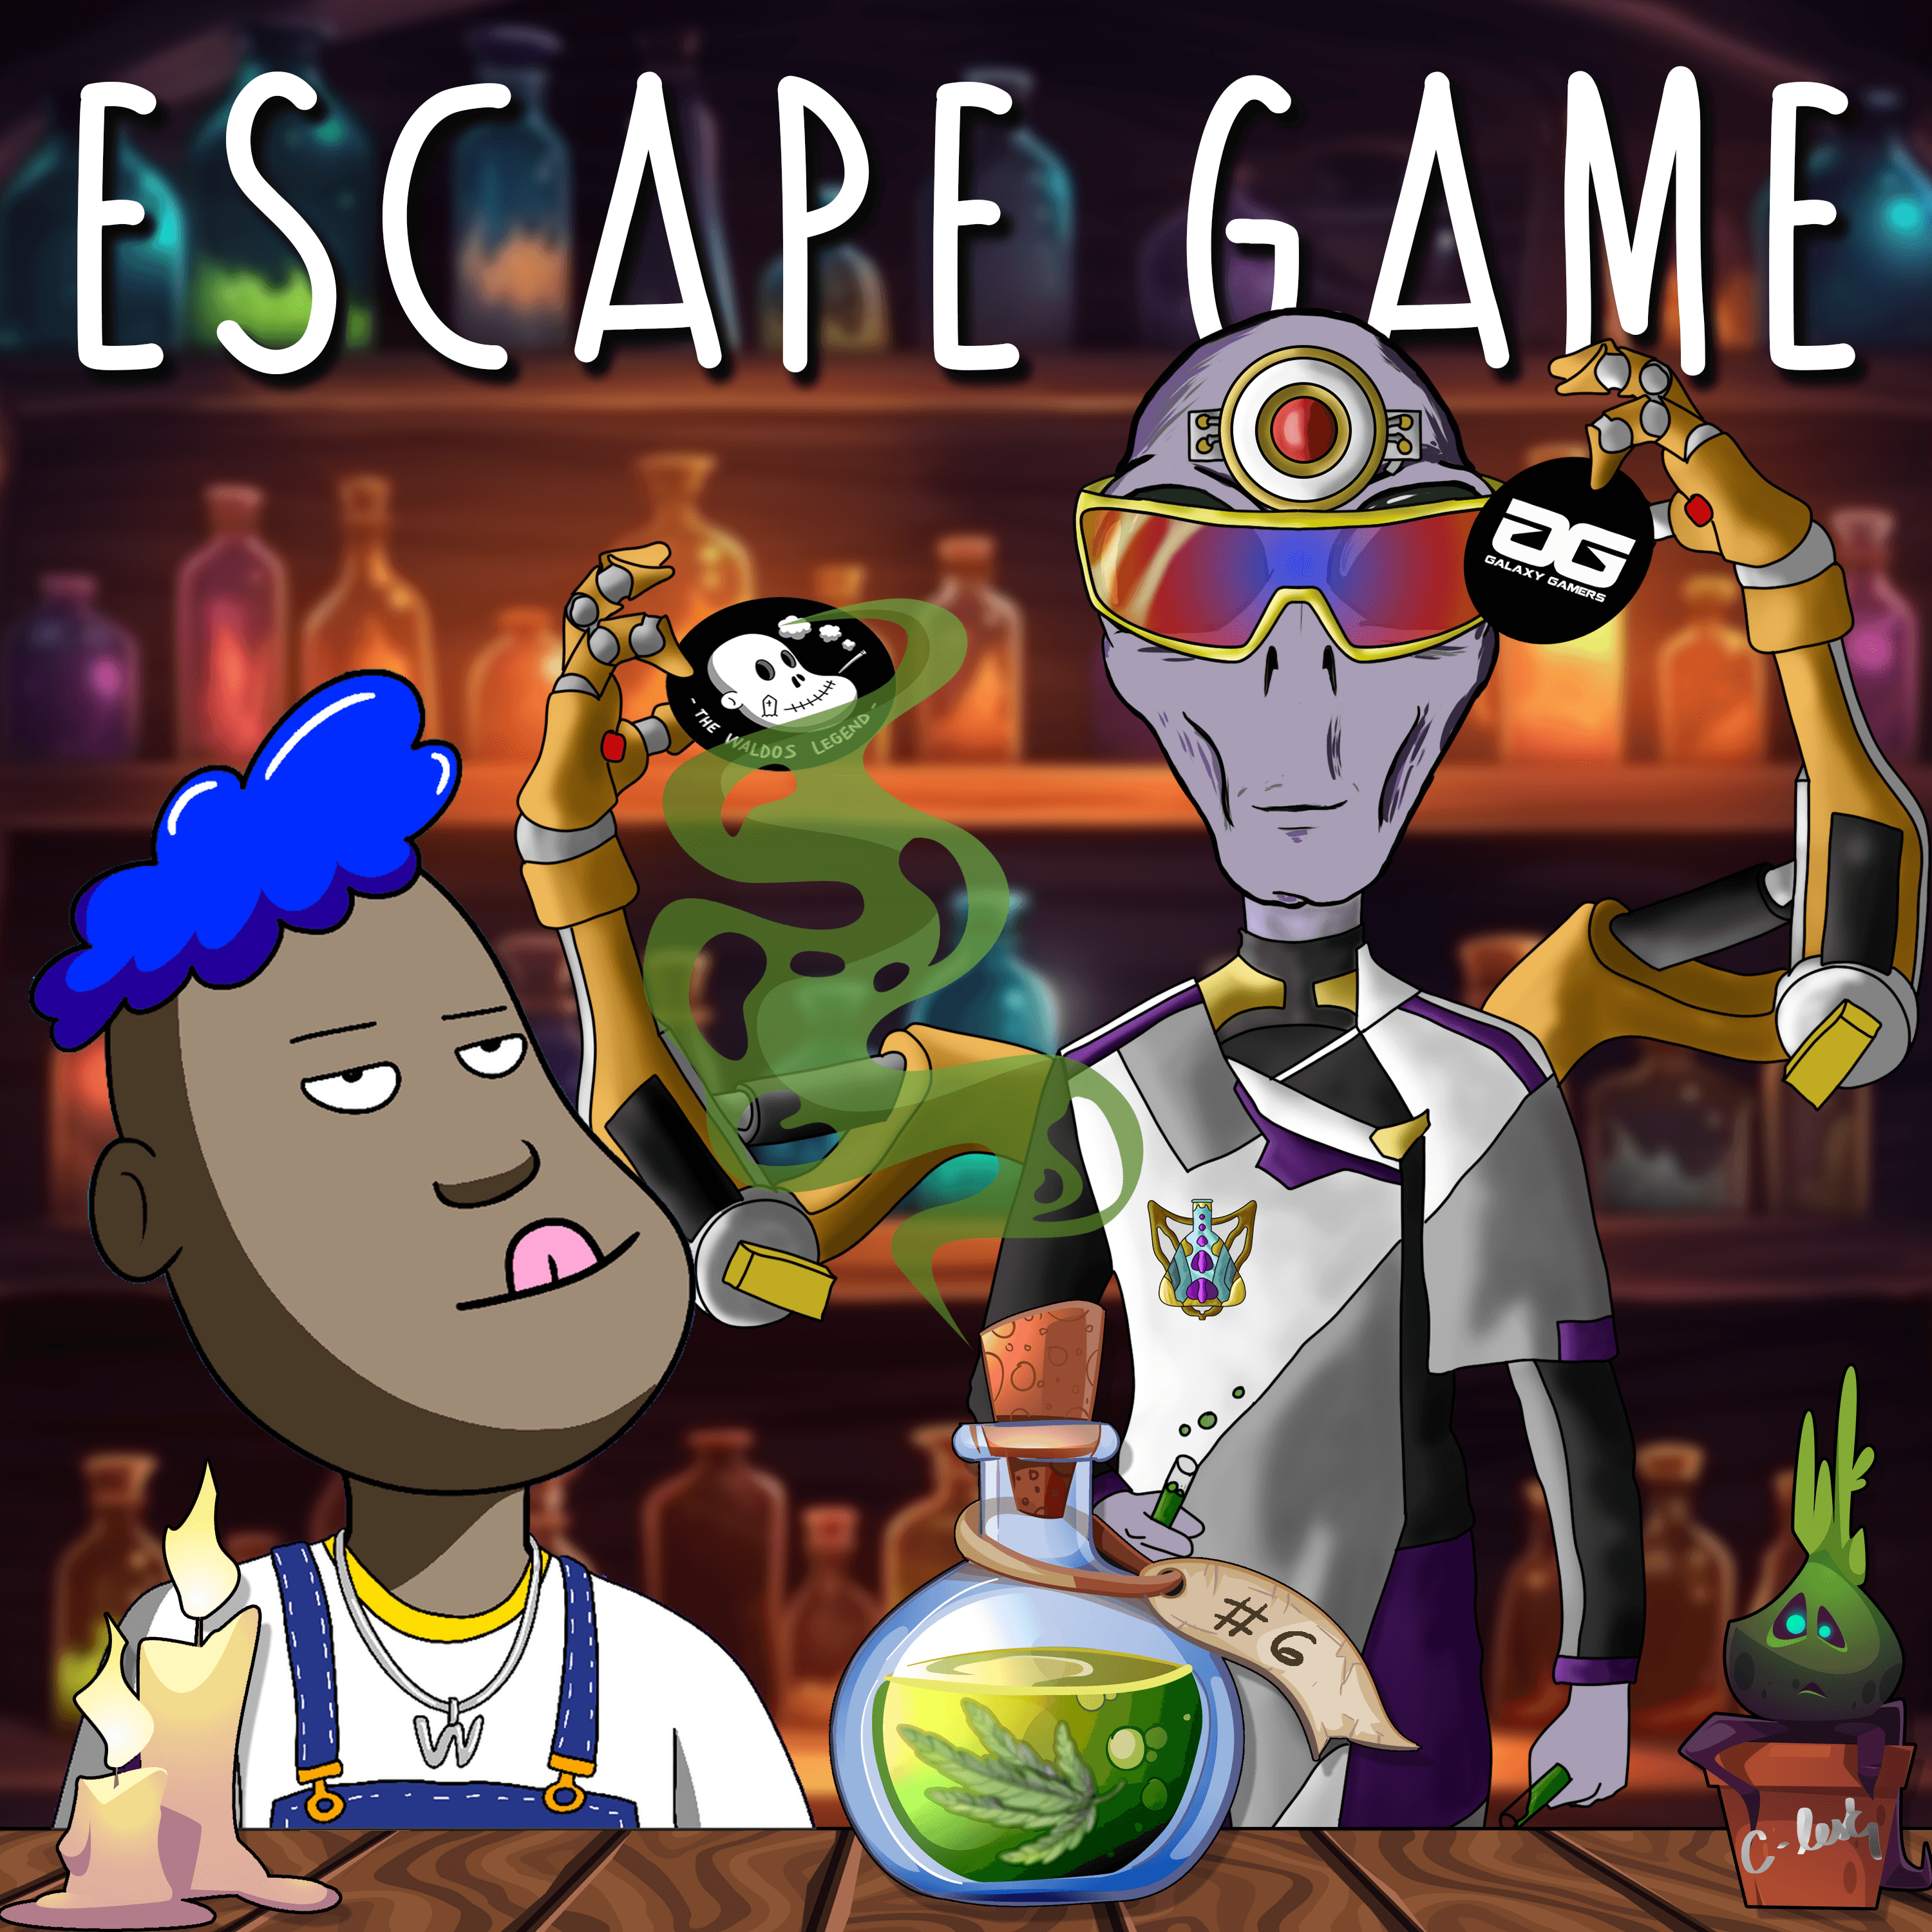 Escape Game GG #6 POAP